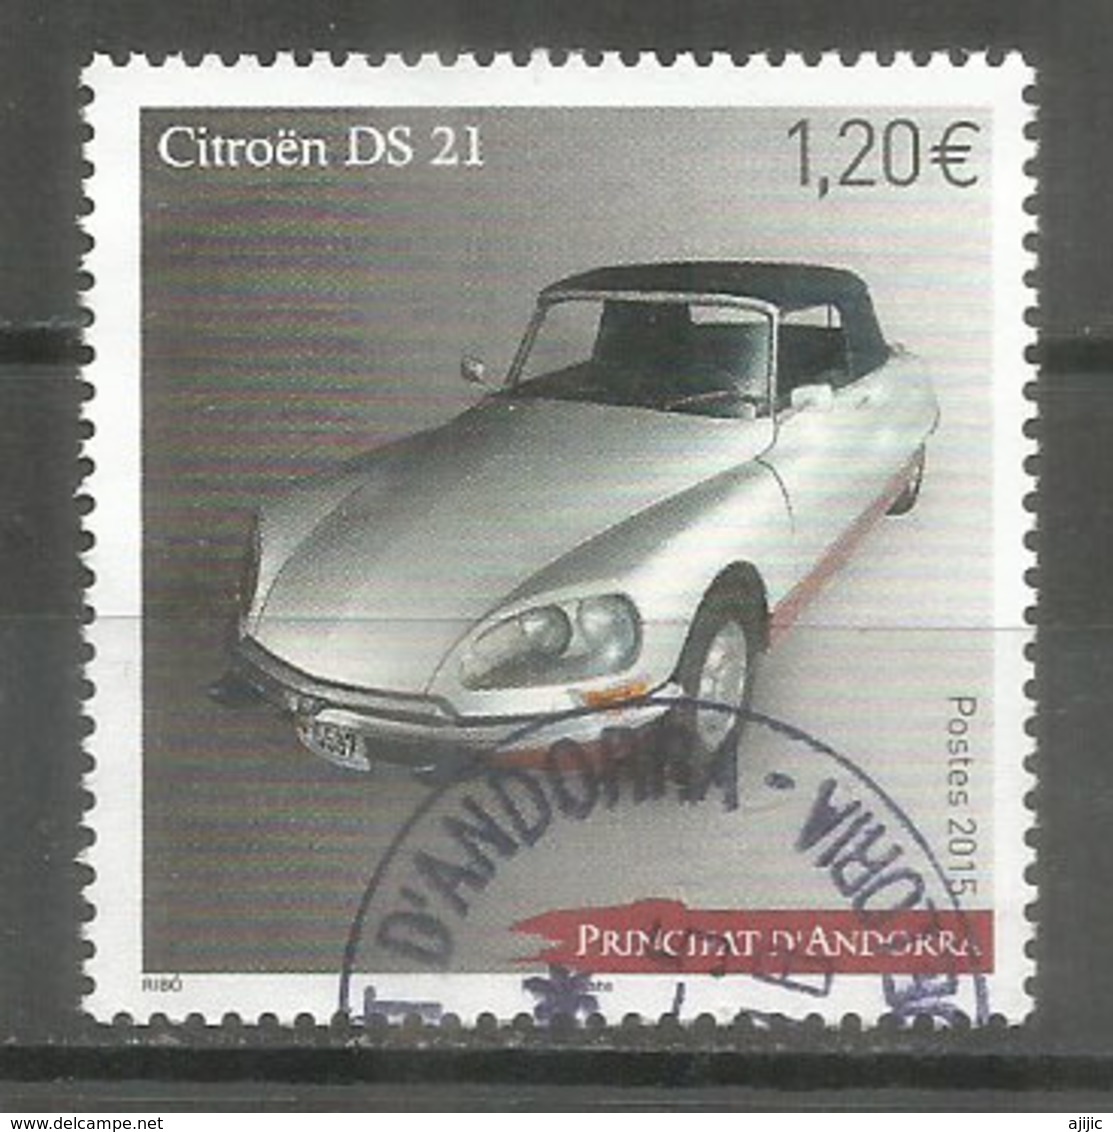 50 Ième Anniversaire De La 1 ère Commercialisation De La Citroën DS 21  Un Timbre Oblitéré 1 ère Qualité 2015. - Used Stamps